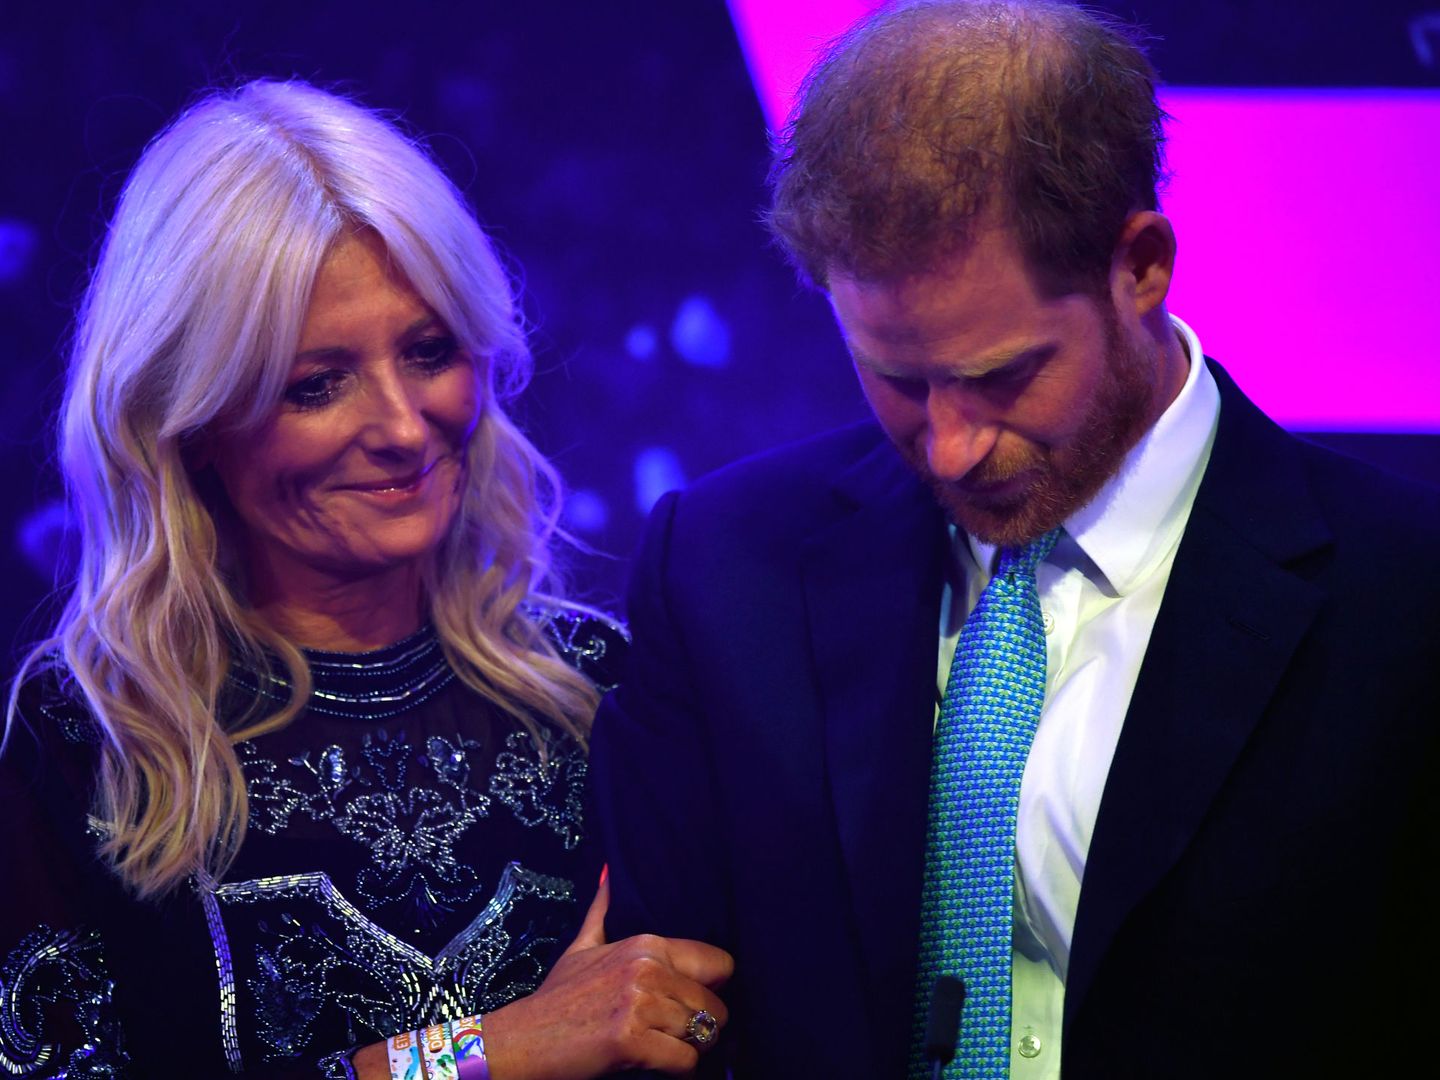 El príncipe Harry emocionado al hablar de su familia durante la ceremonia de los premios WellChild en Londres. (Reuters)